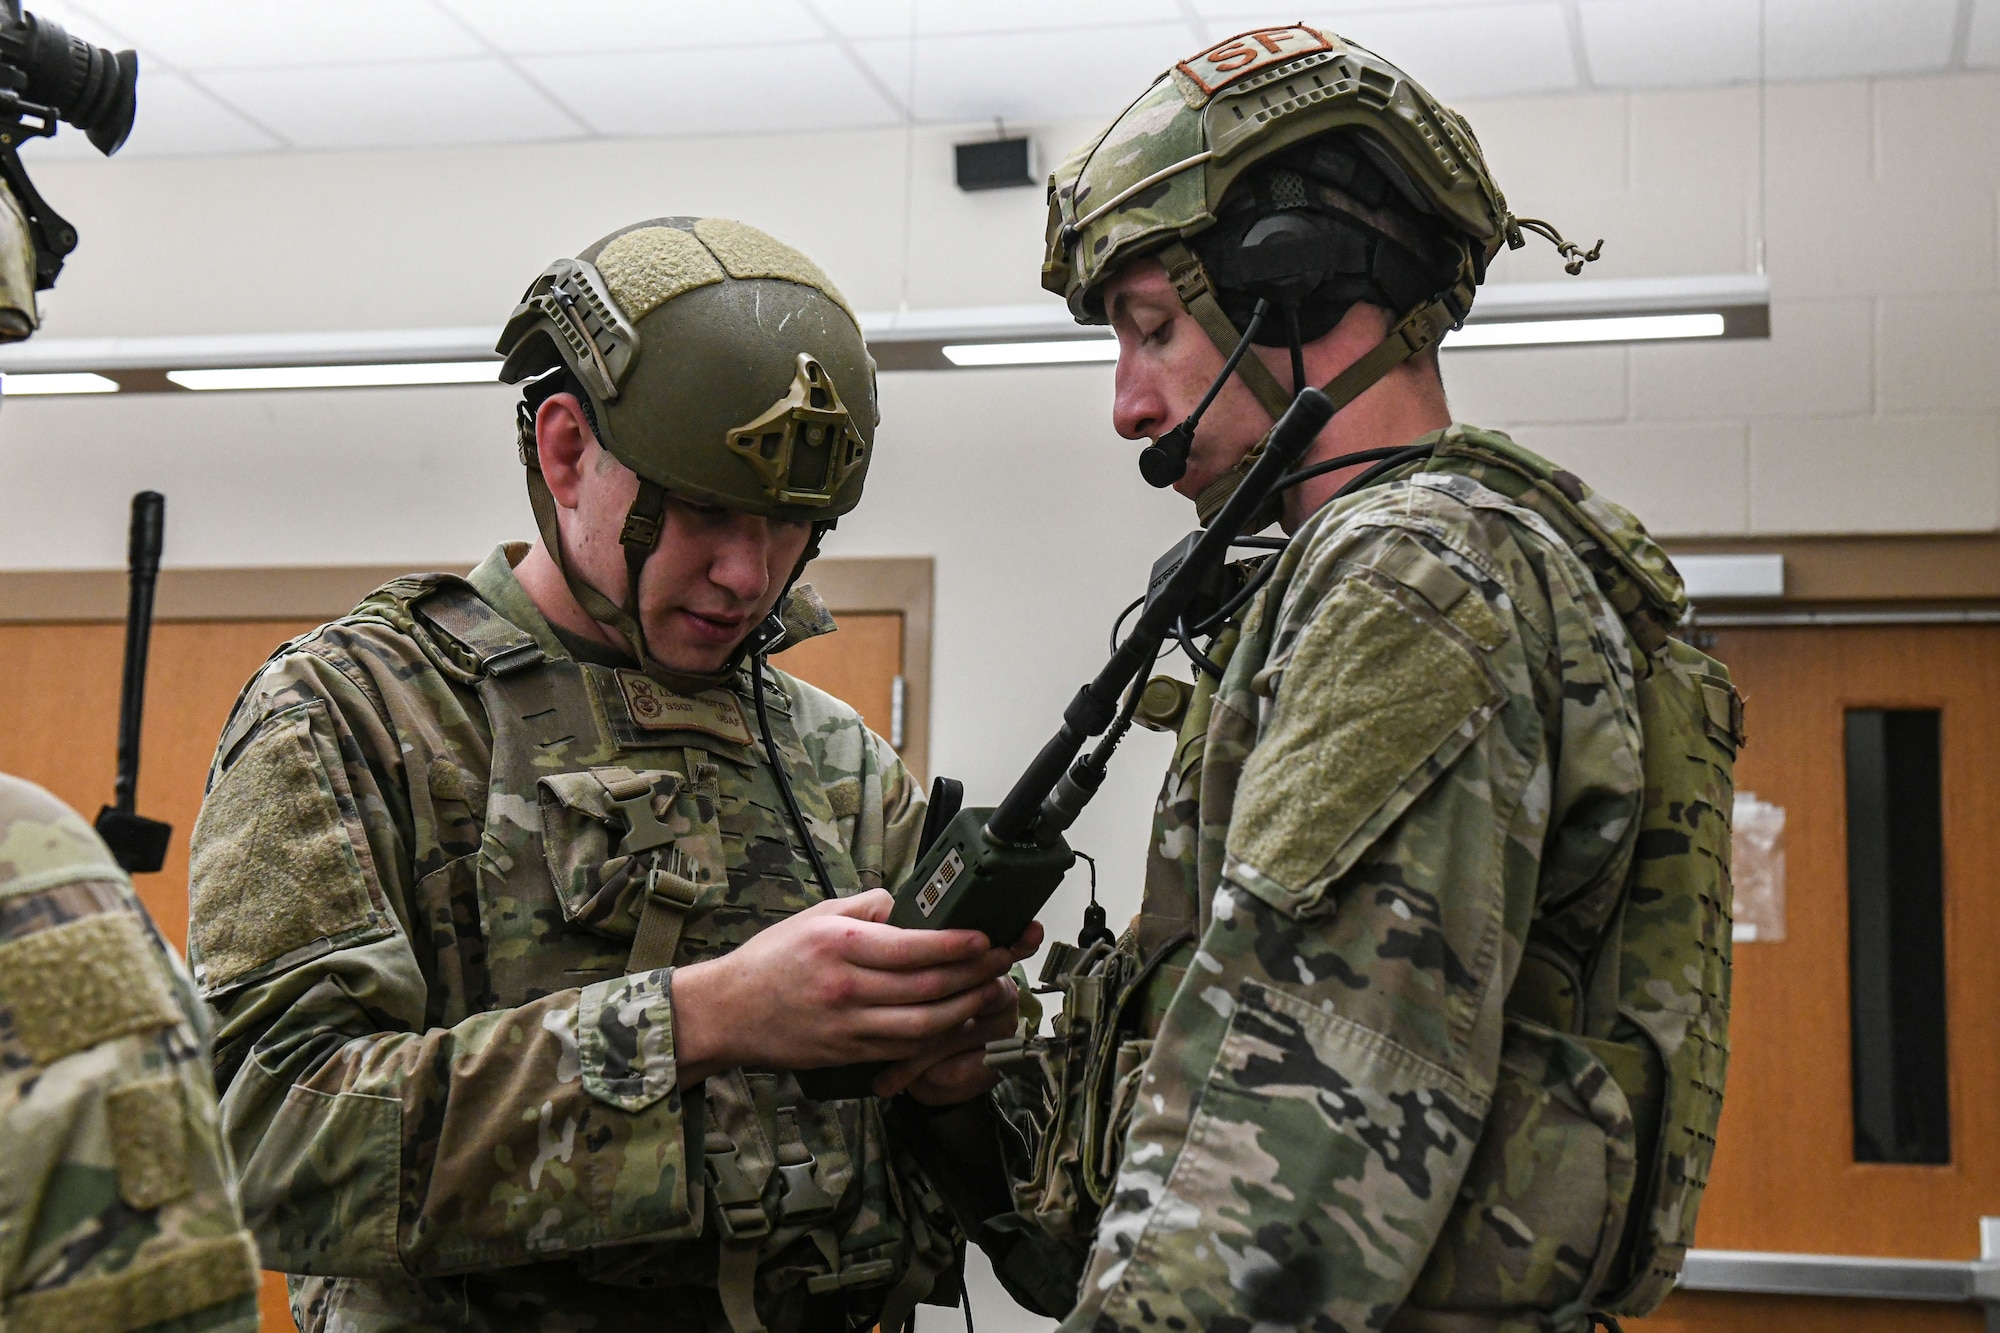 men in uniform prepare their equipment